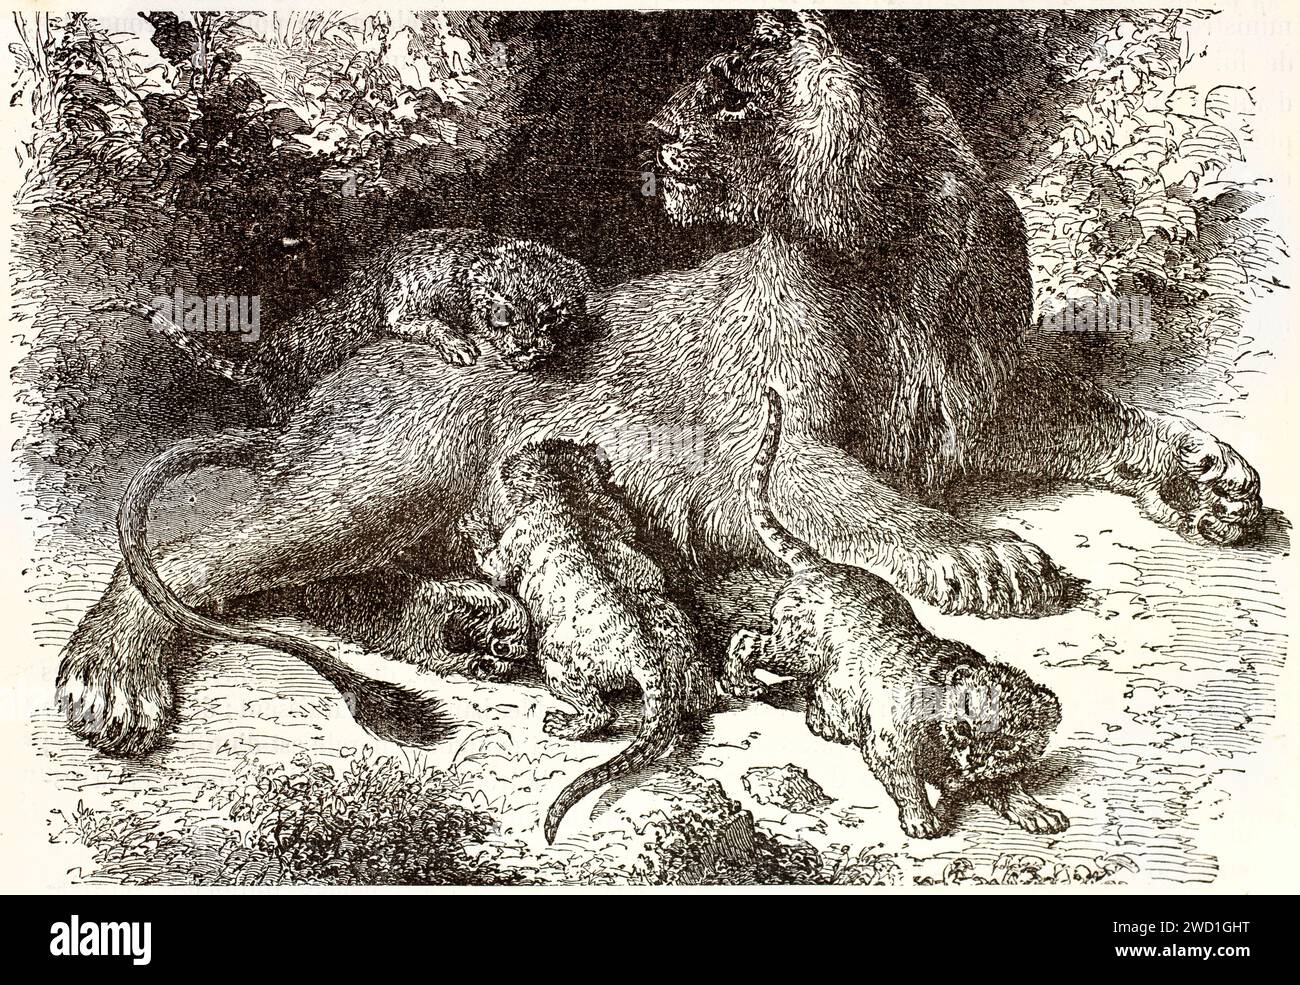 Vecchia illustrazione incisa della leonessa e dei suoi cuccioli. Di autore sconosciuto, pubblicato su Brehm, Les Mammifers, Baillière et fils, Parigi, 1878 Foto Stock